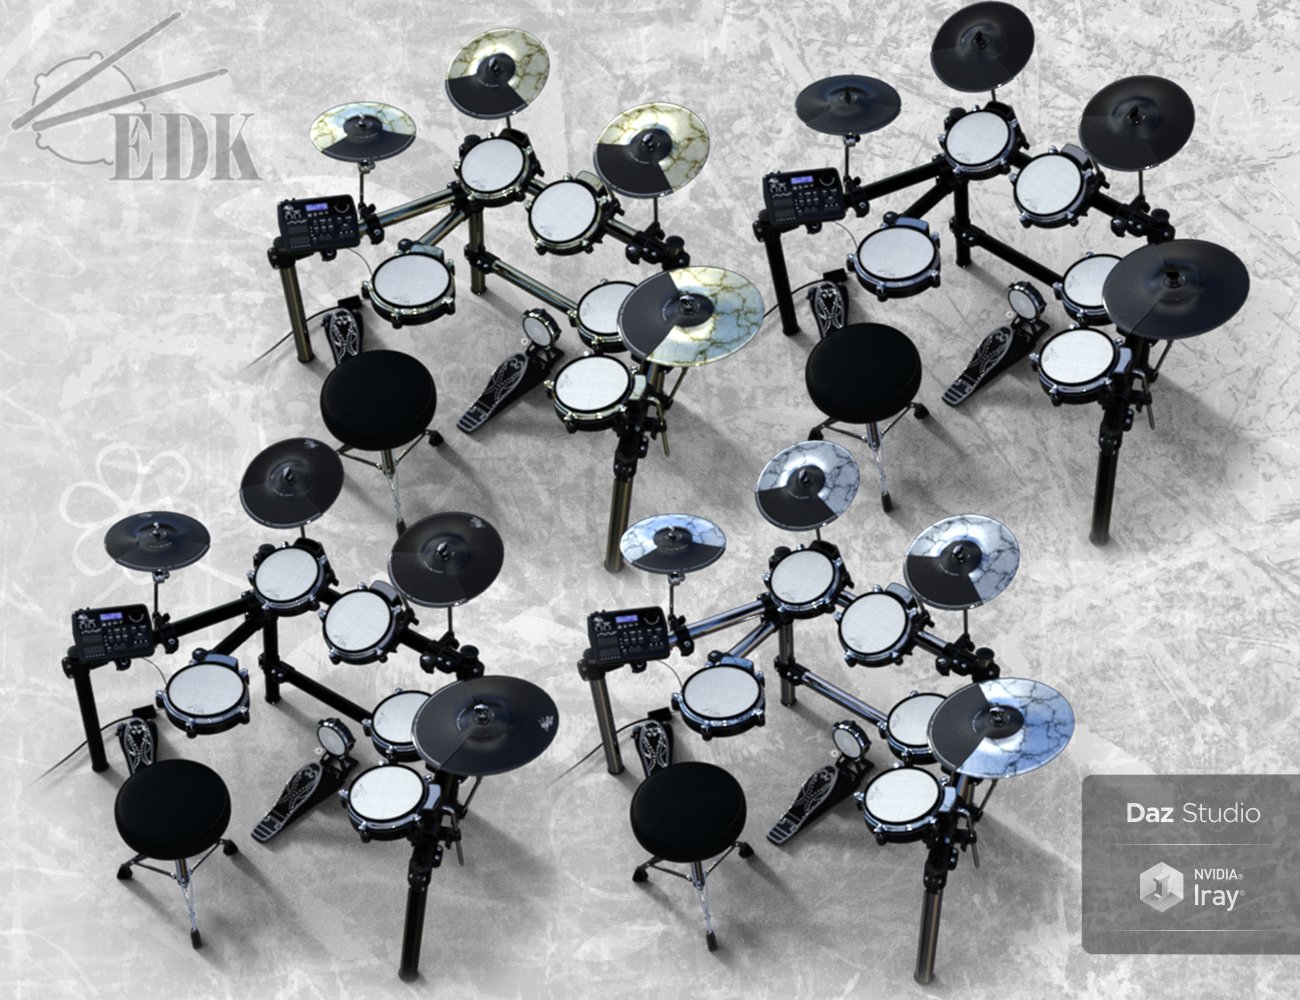 Electric Drum Kit by: Td3d, 3D Models by Daz 3D